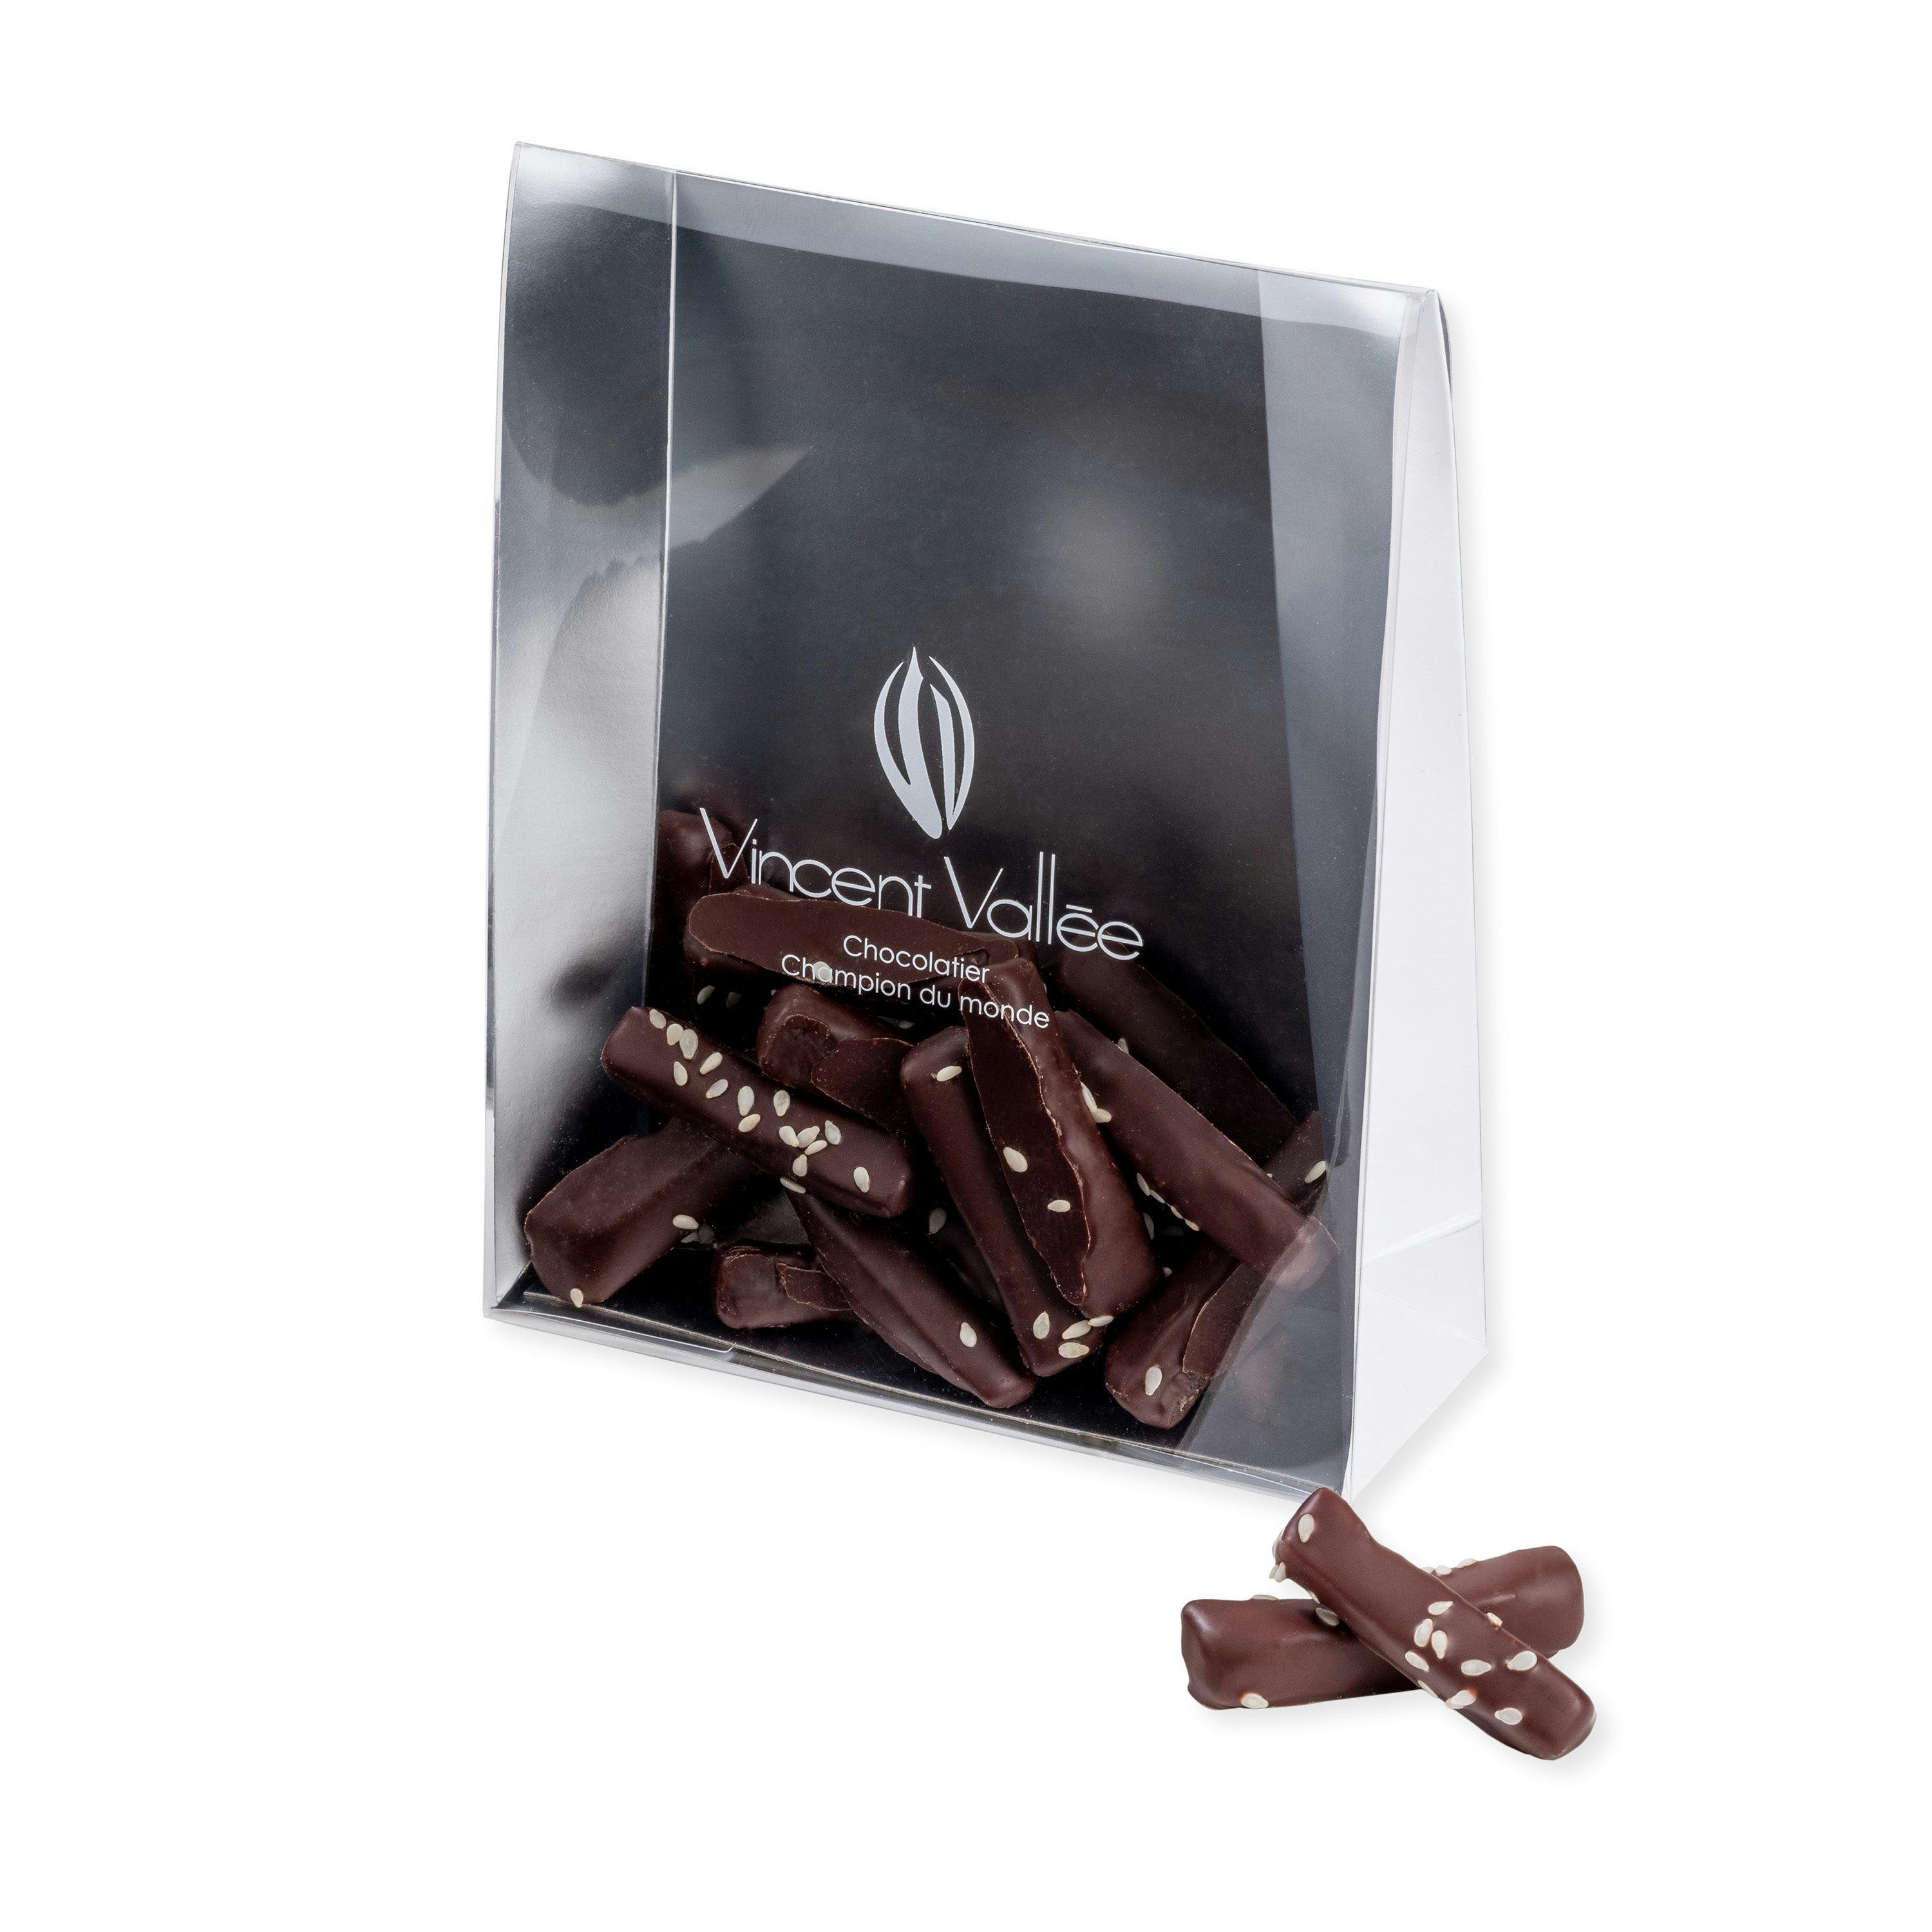 Gingembrettes chocolat 70% - Vincent Vallée chocolatier champion du monde